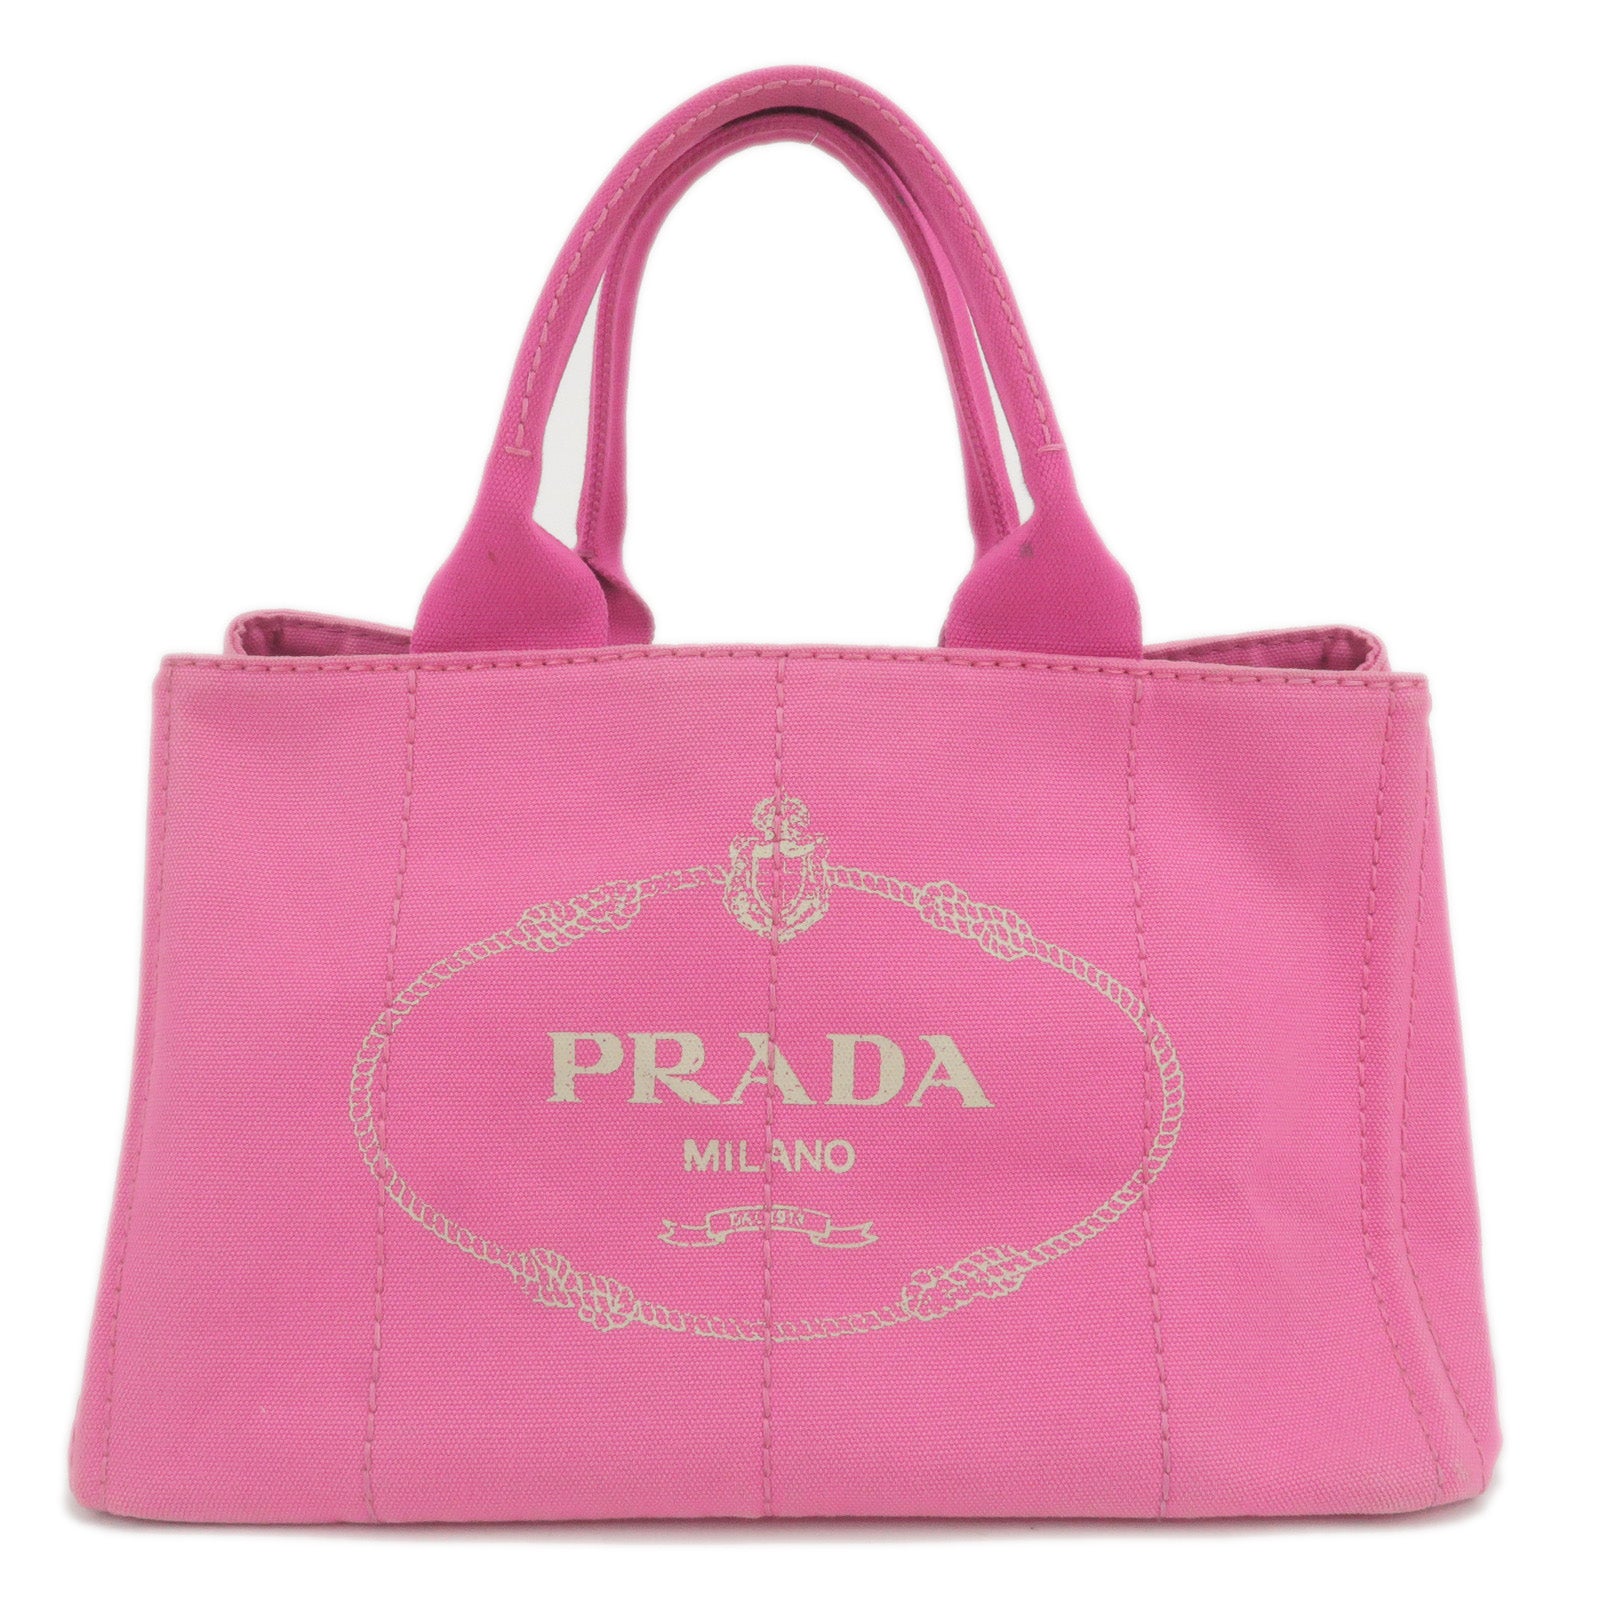 PRADA-Canapa-Canvas-Tote-Bag-Hand-Bag-Pink-BN1877